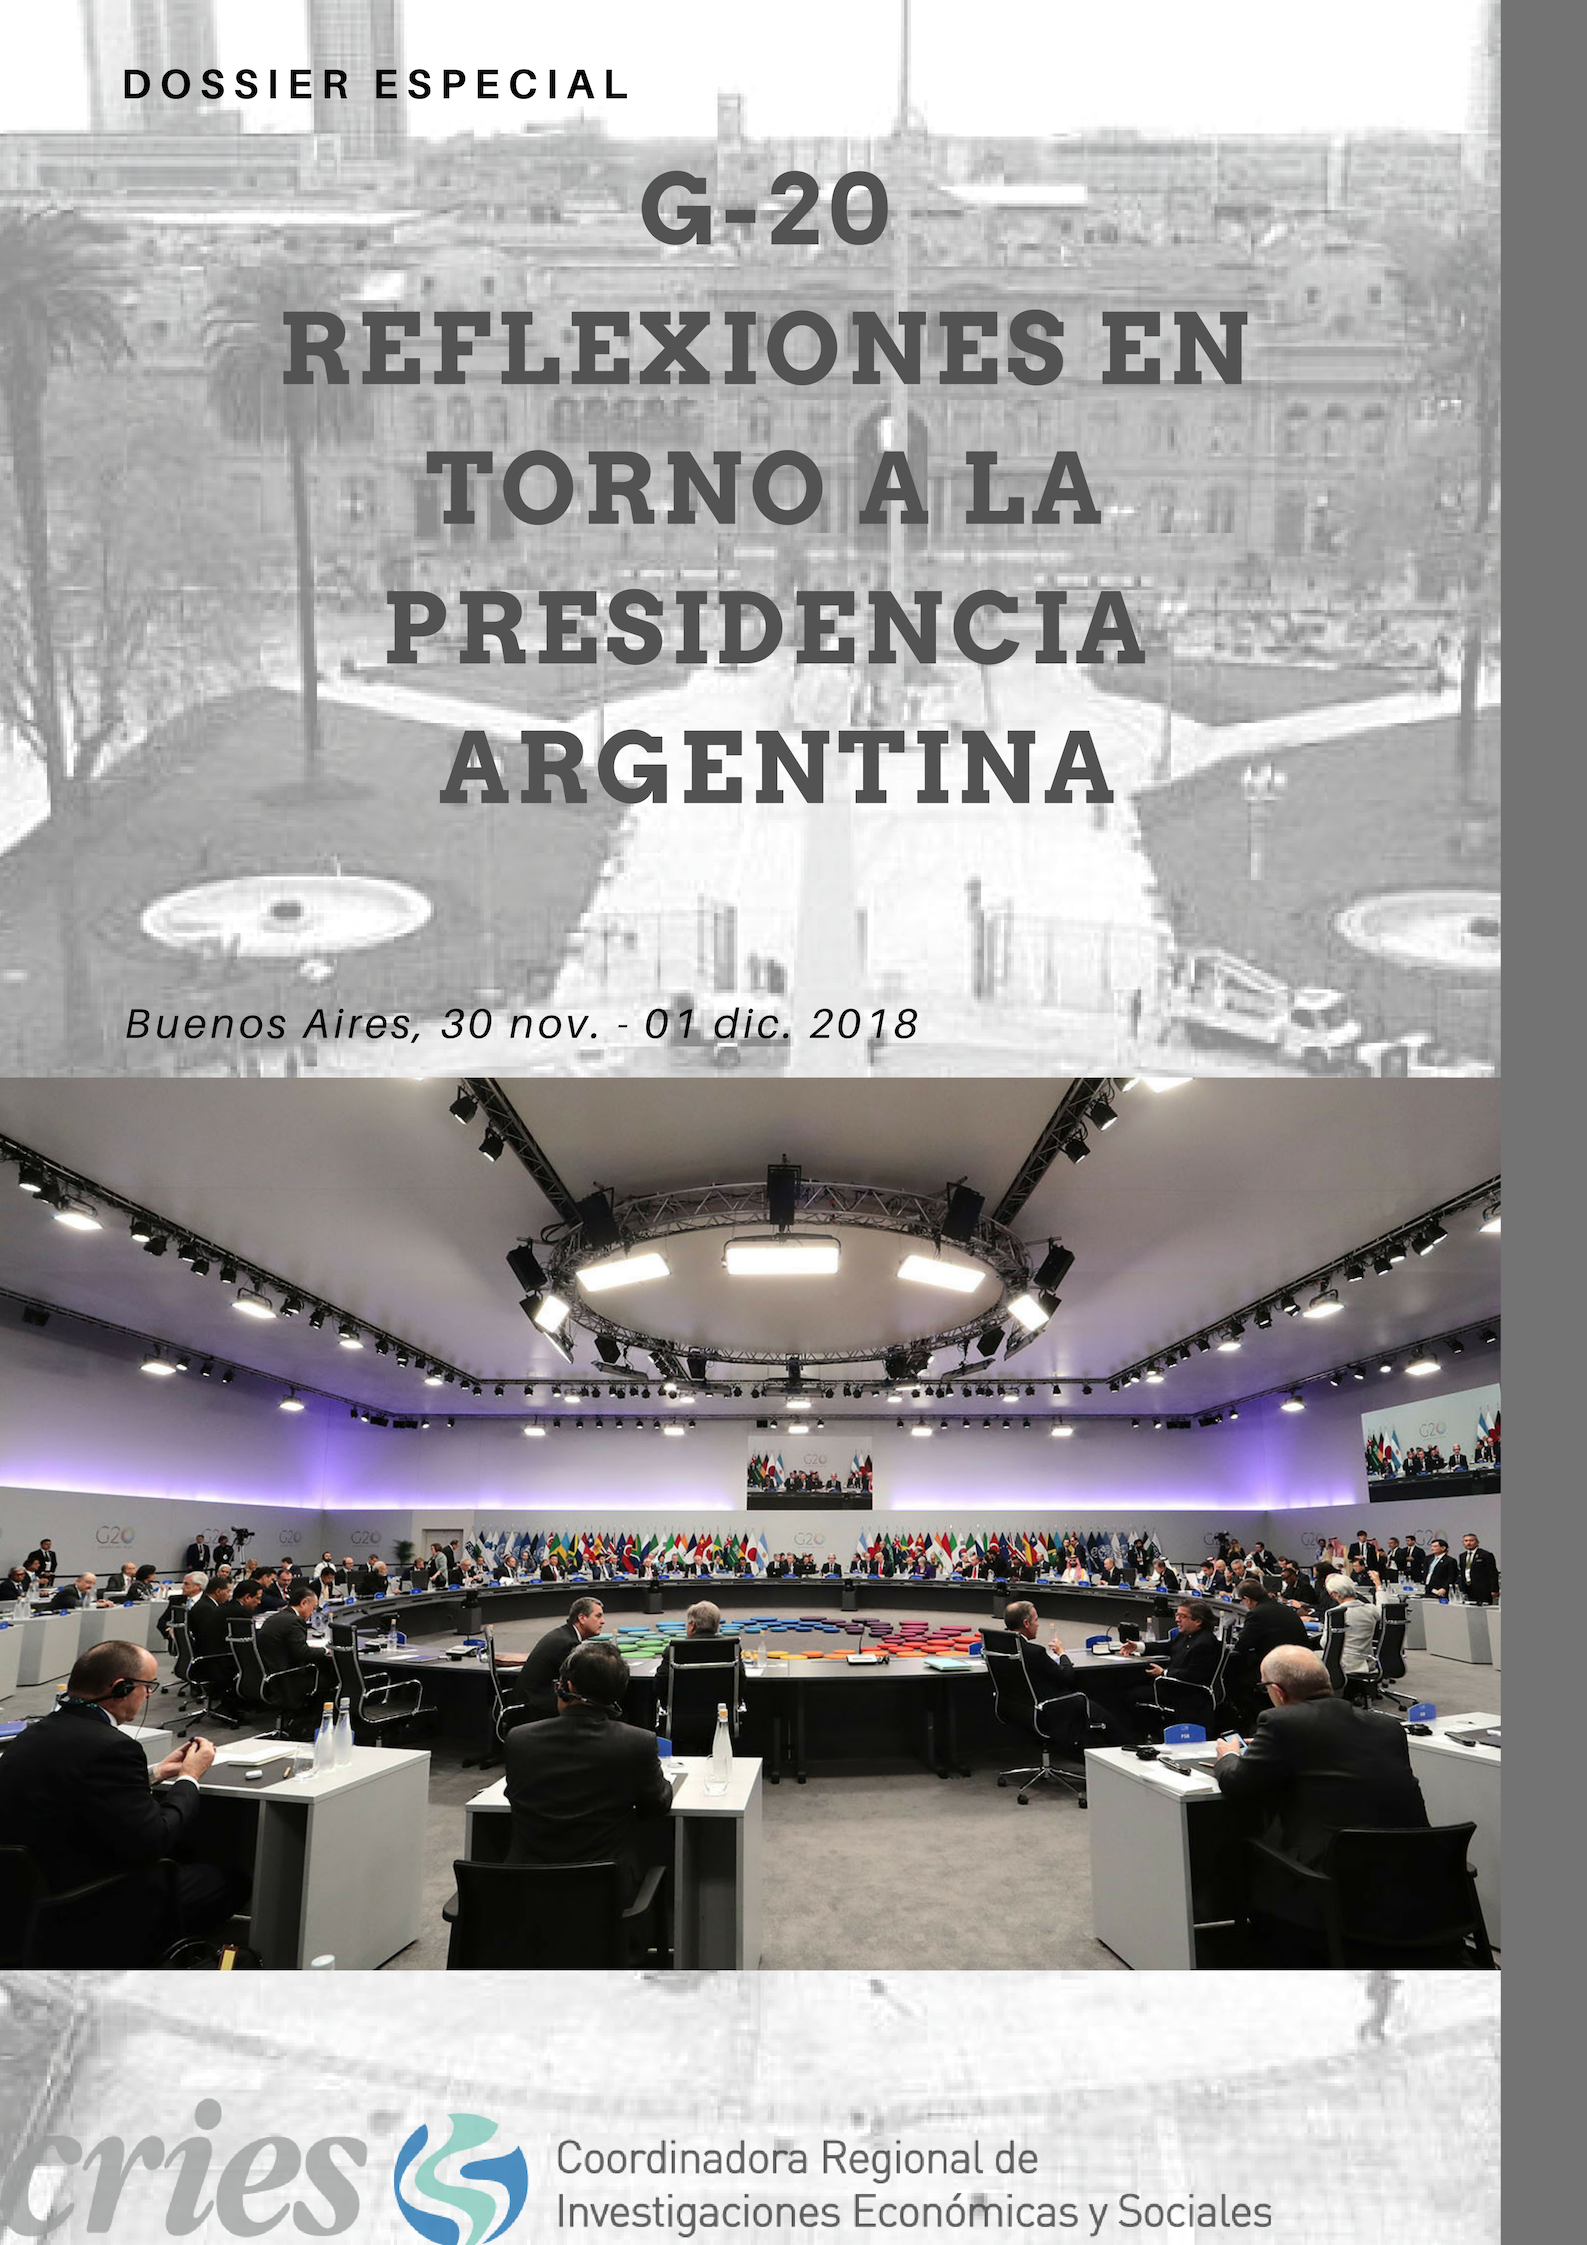 Dossier Especial: La presidencia Argentina del G-20